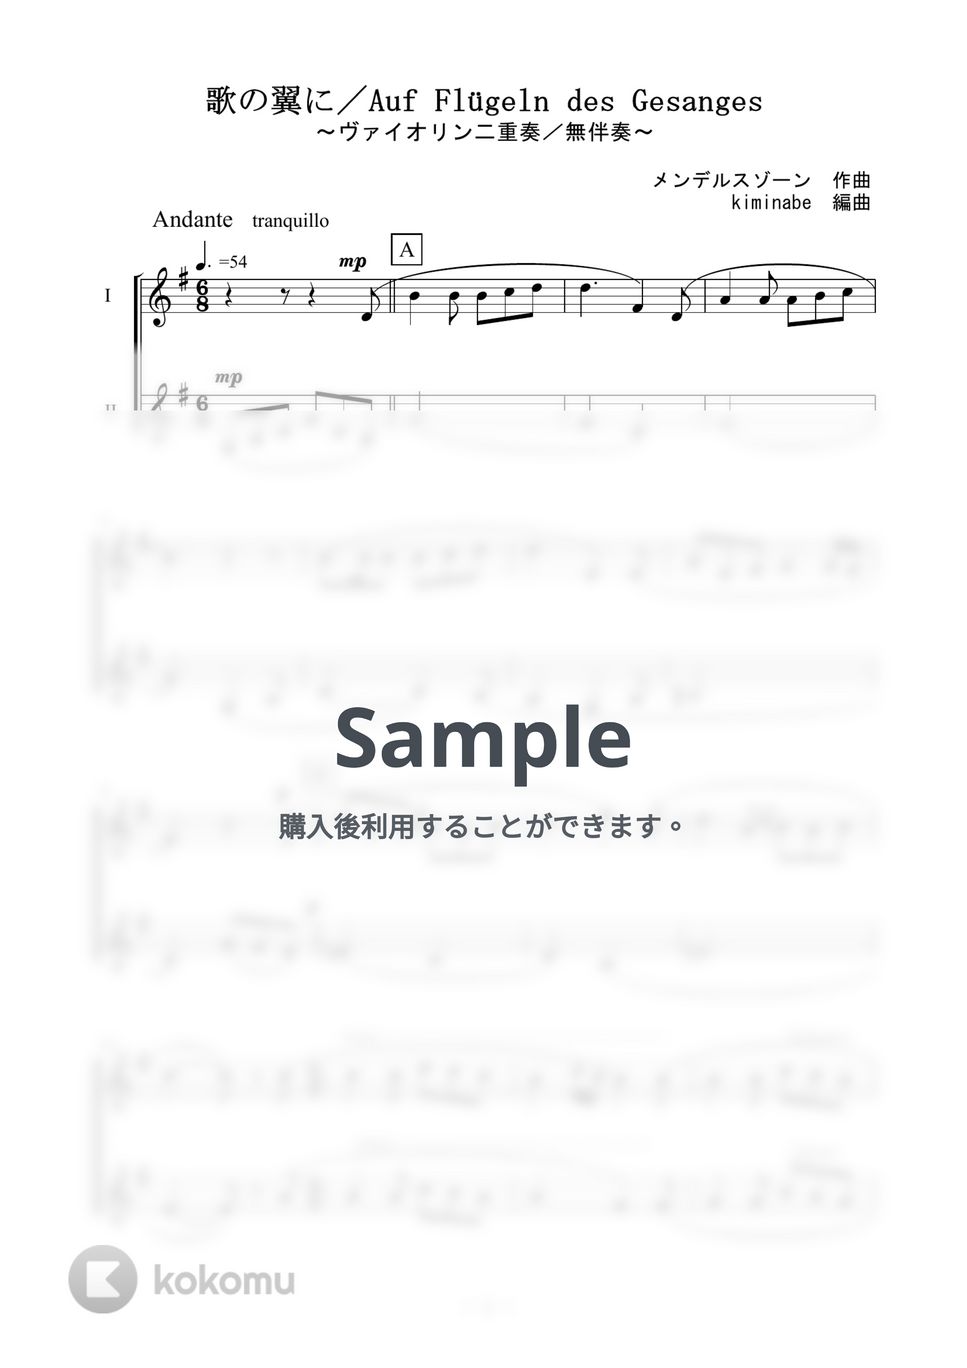 メンデルスゾーン - 歌の翼に (ヴァイオリン二重奏／無伴奏) by kiminabe